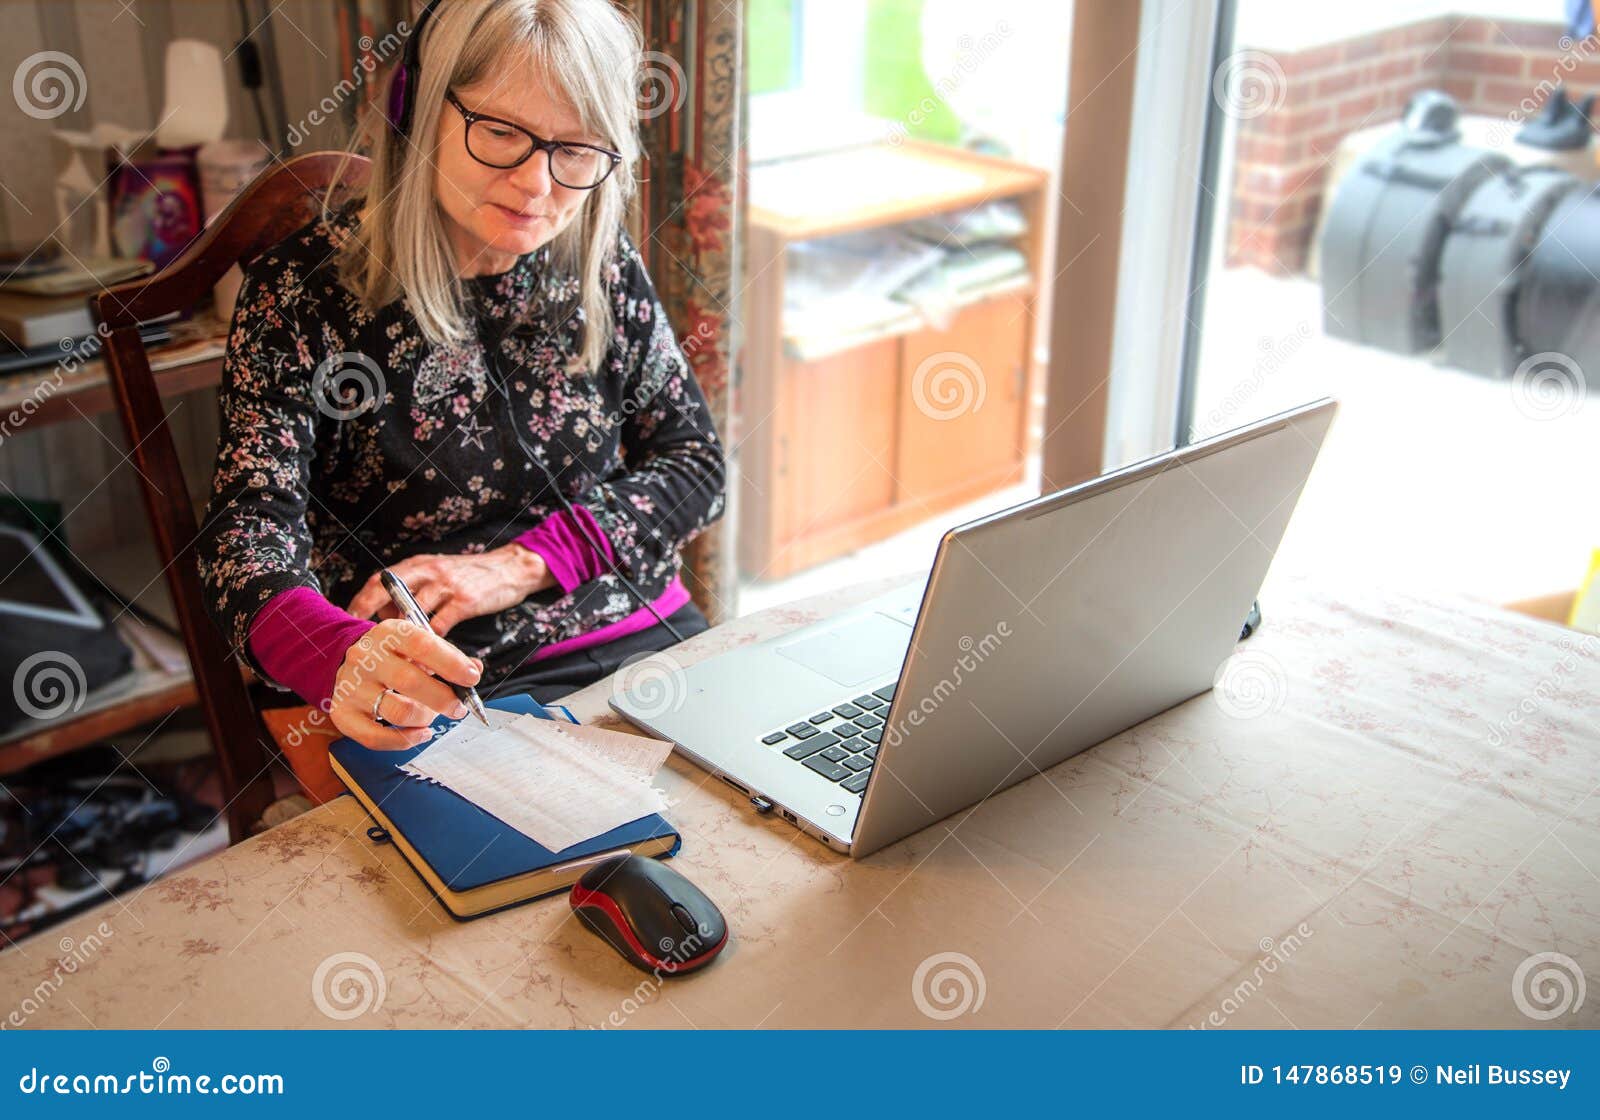 digital nomad woman watching webinar on her laptop,wearing headphones